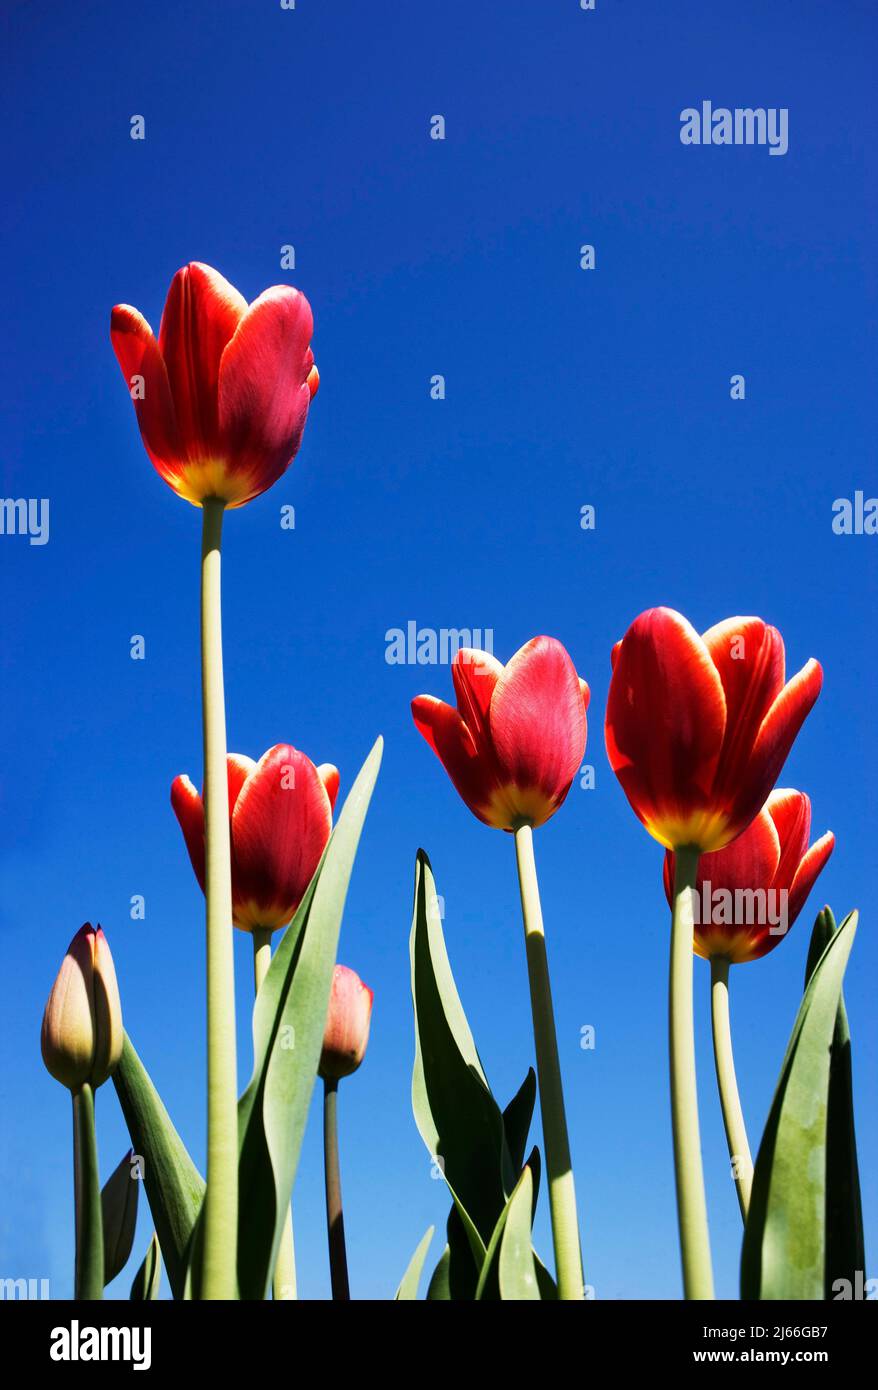 Bluehende rote Tulpen (Tulipa gesneriana) vorm blauen Himmel, Fruehlingsblume, Oesterreich Stock Photo